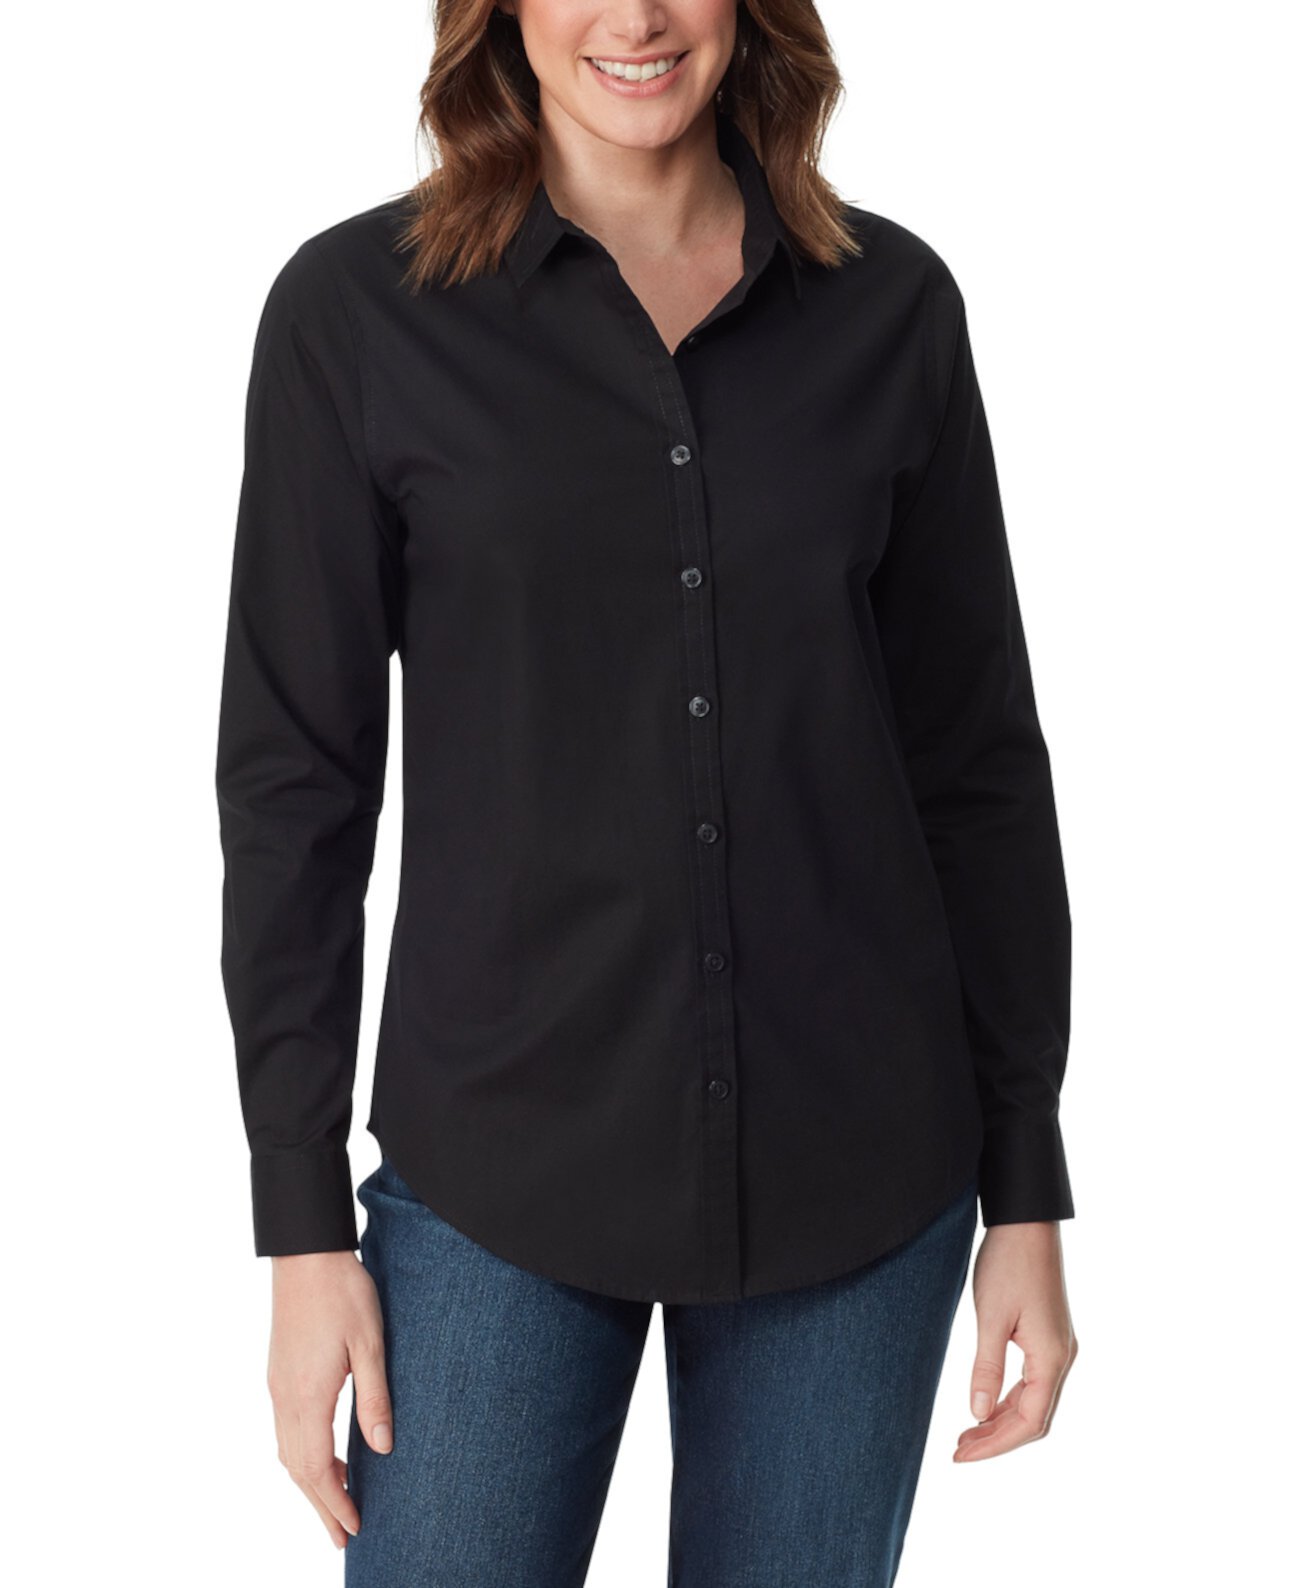 Женская приталенная рубашка с длинными рукавами Amanda Gloria Vanderbilt